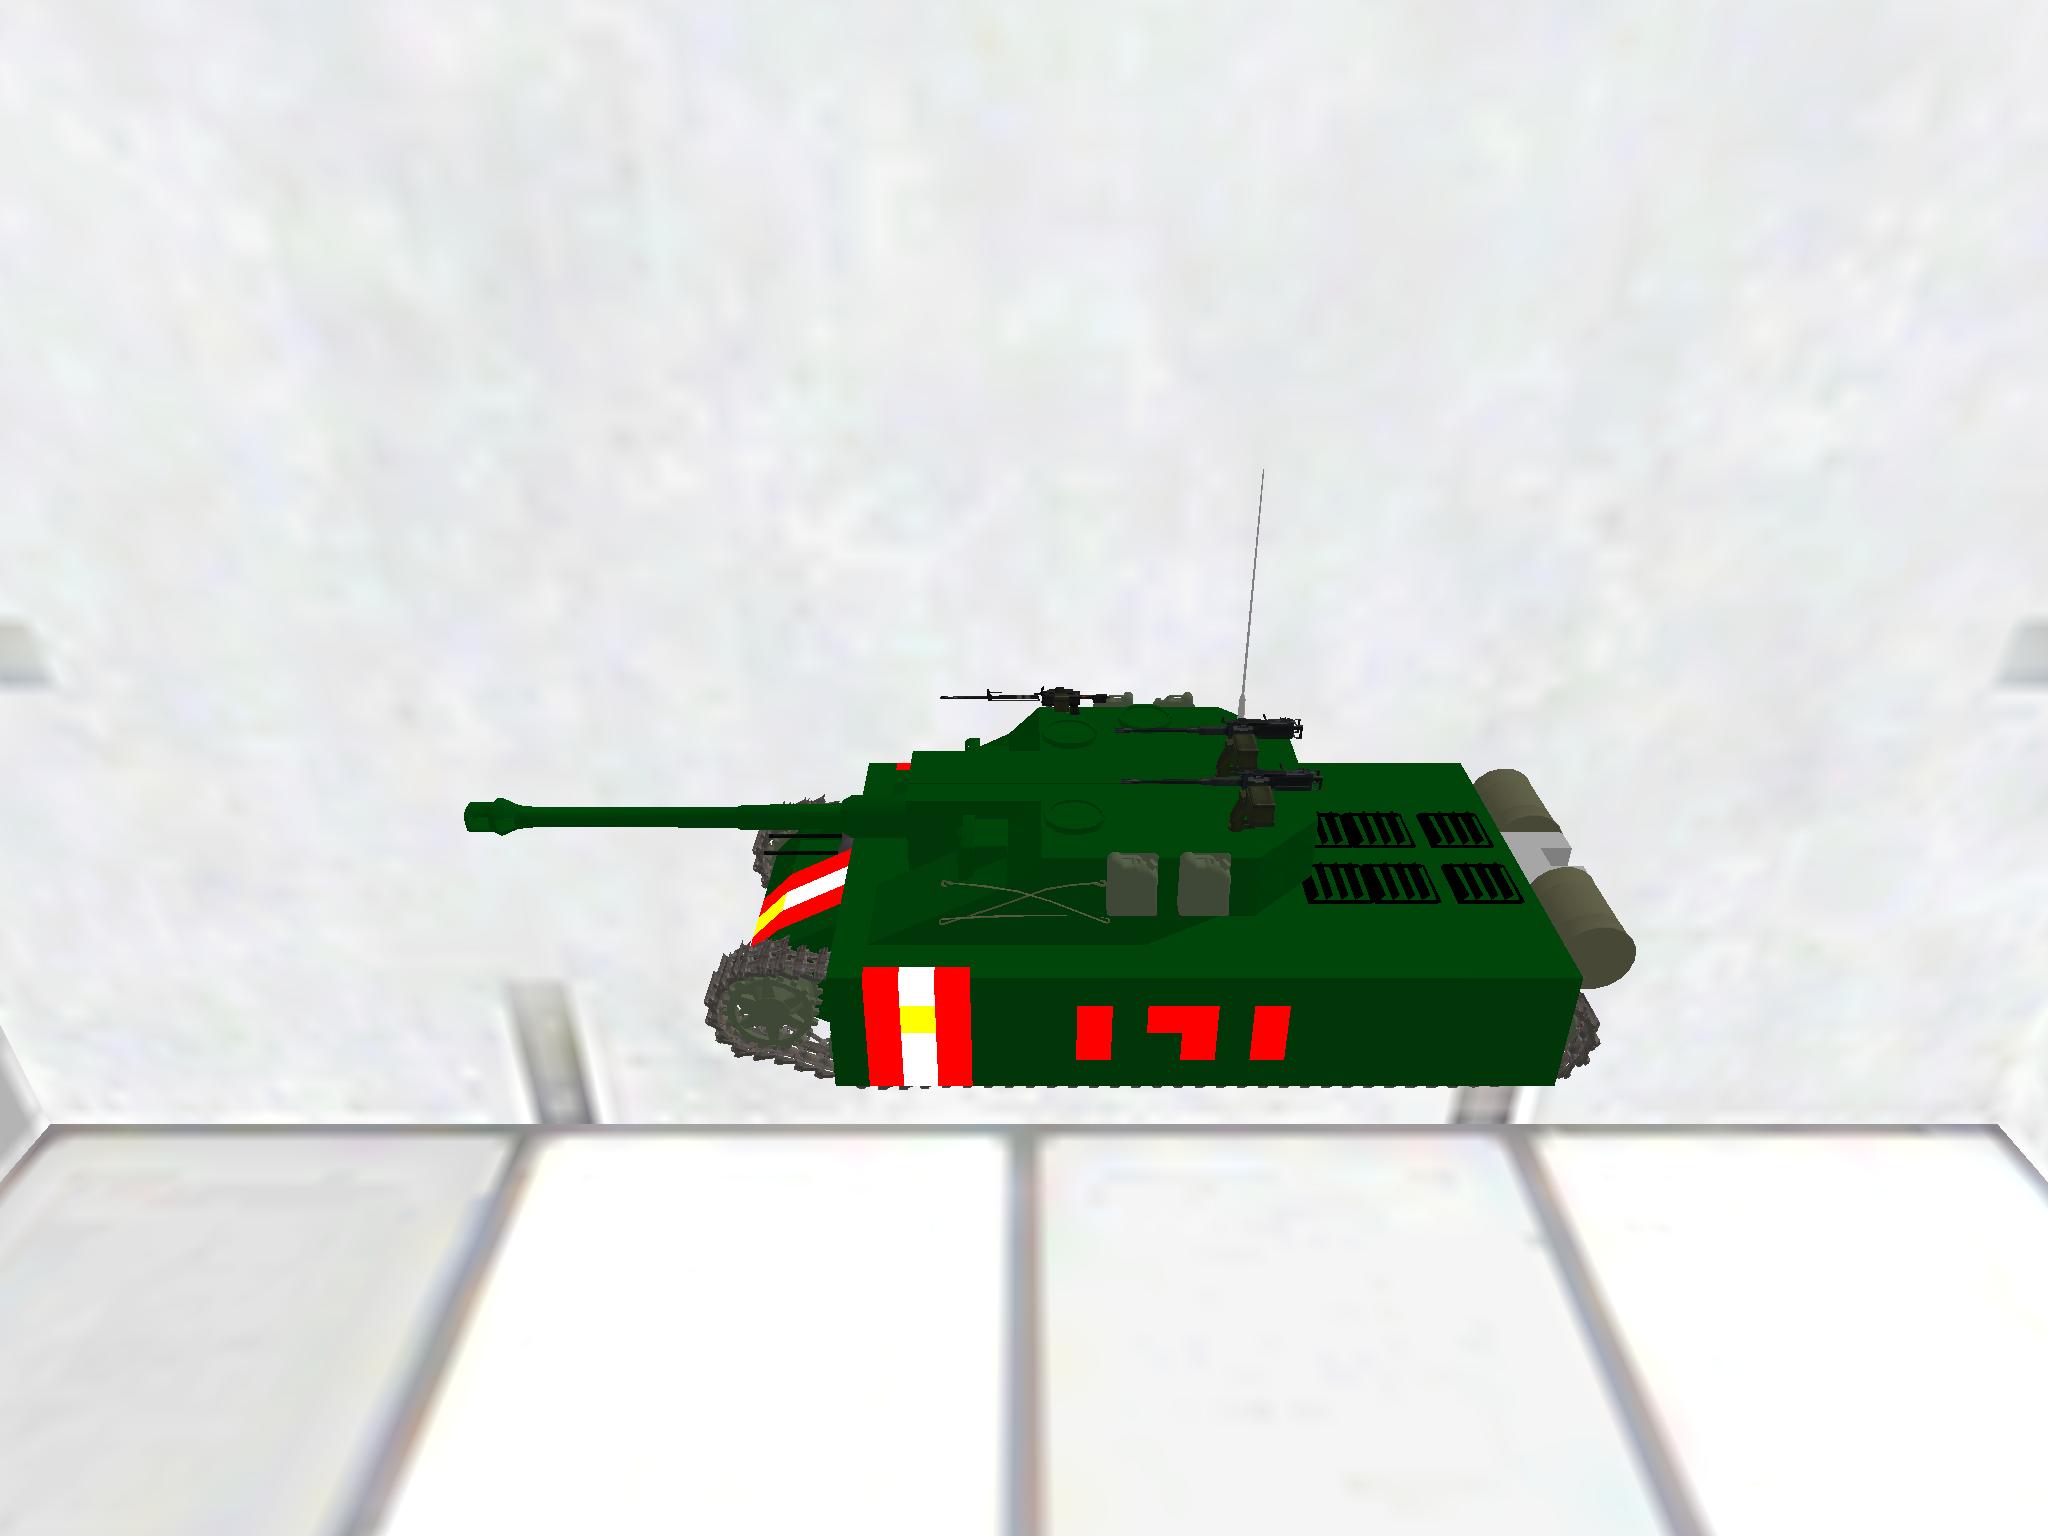 Heavy Tank